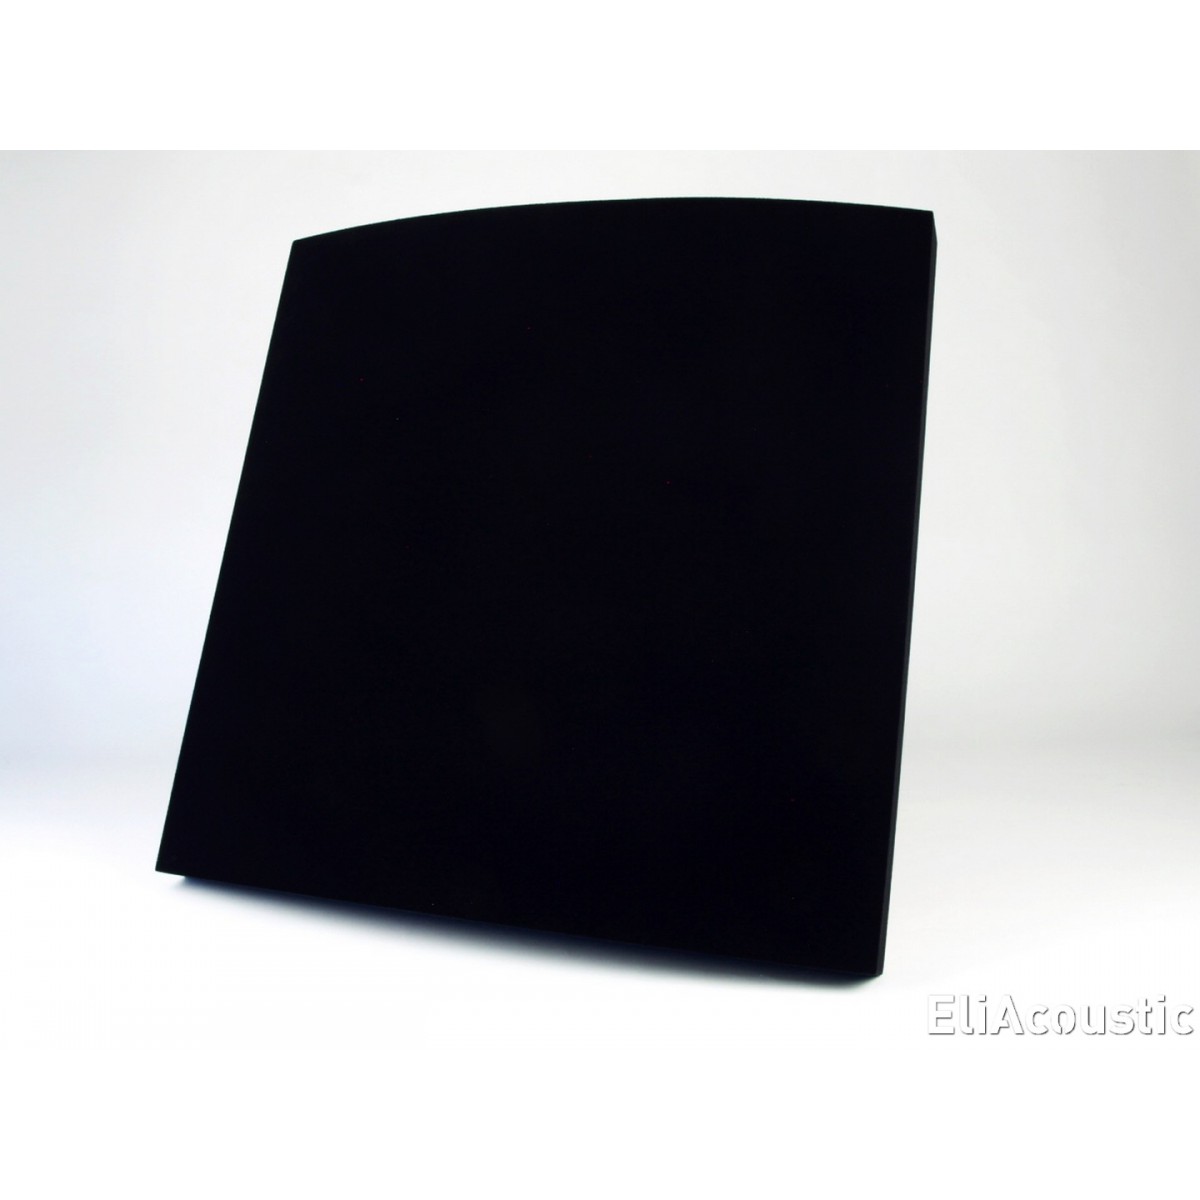 EliAcoustic Curve Premiere Black (Ref 2802)